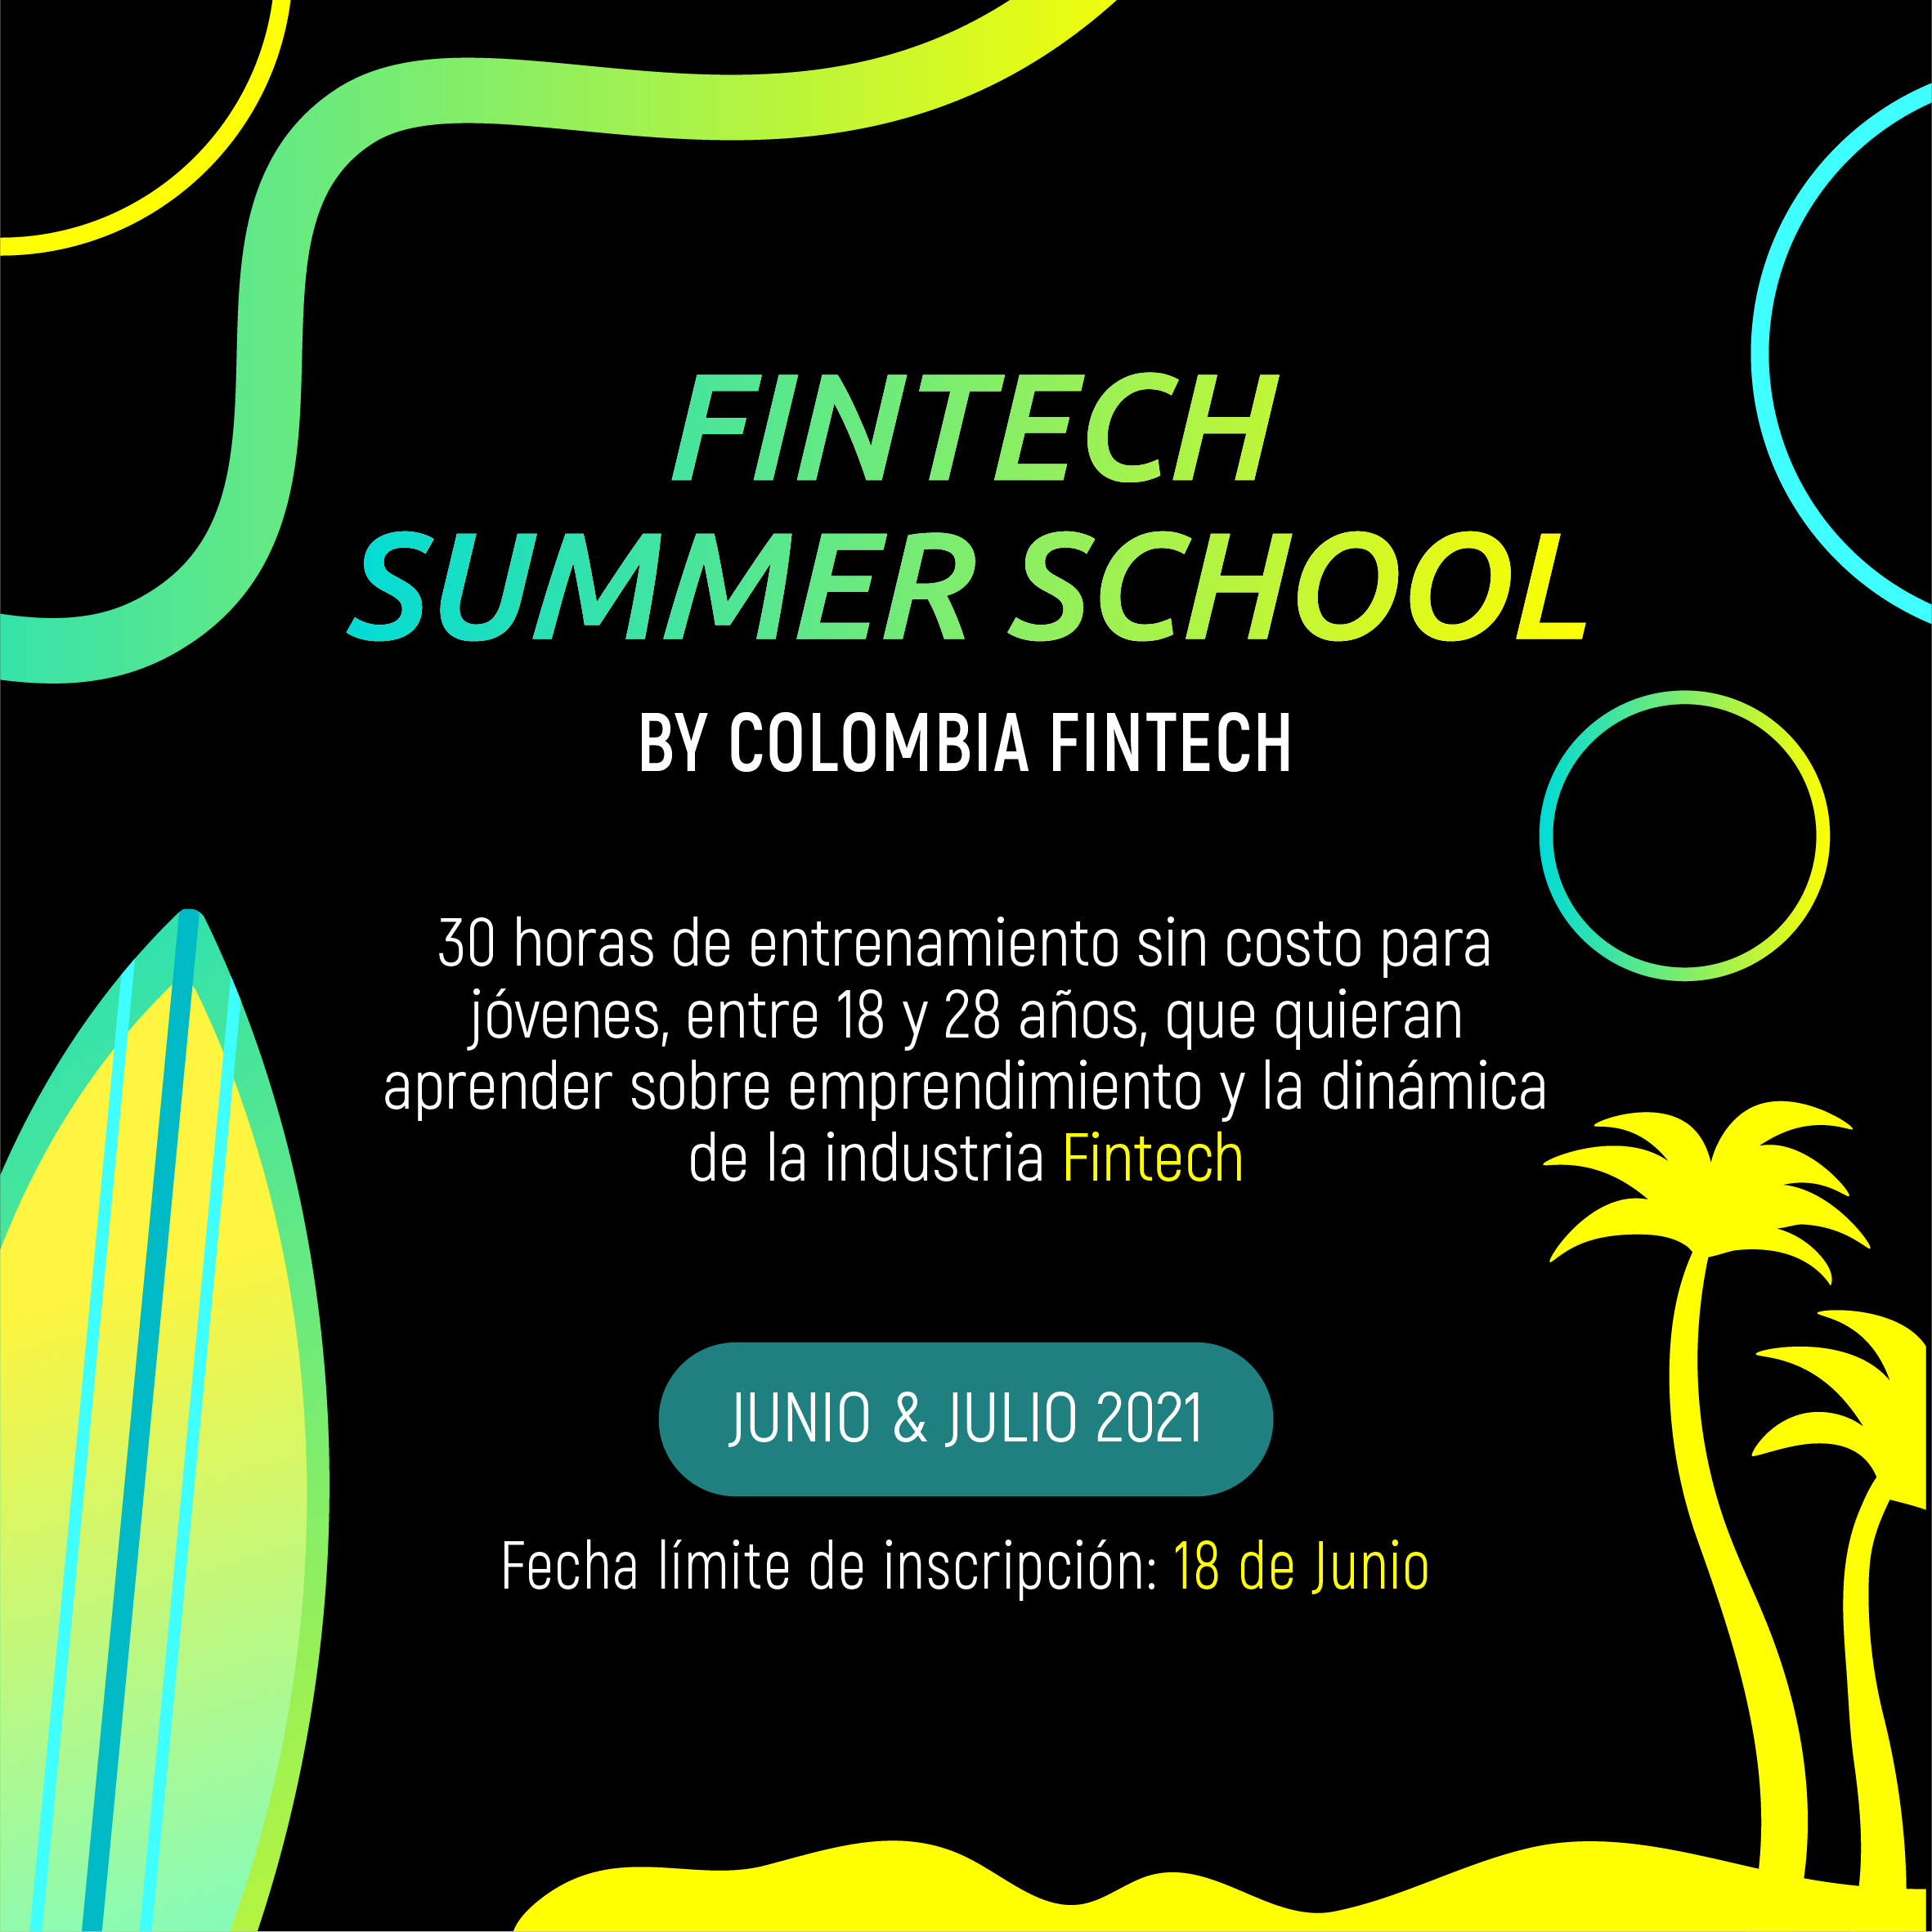 Fintech Summer School